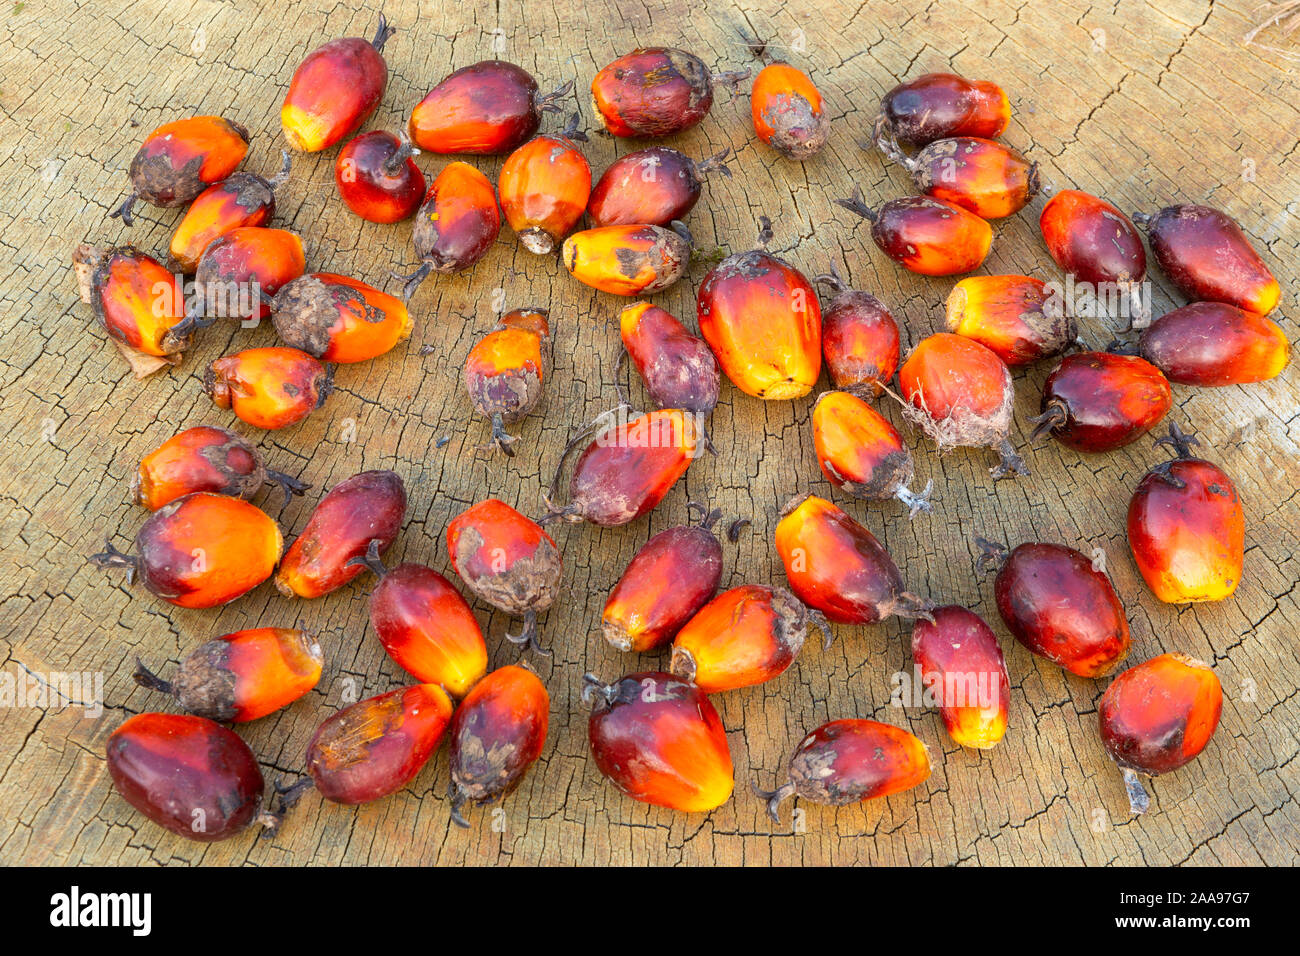 Gros plan du groupe de fruits à huile de palme (Elaeis guineensis), sur une table rustique en bois. Fruits dont l'huile végétale est utilisée dans l'industrie alimentaire, cosmétique. Banque D'Images